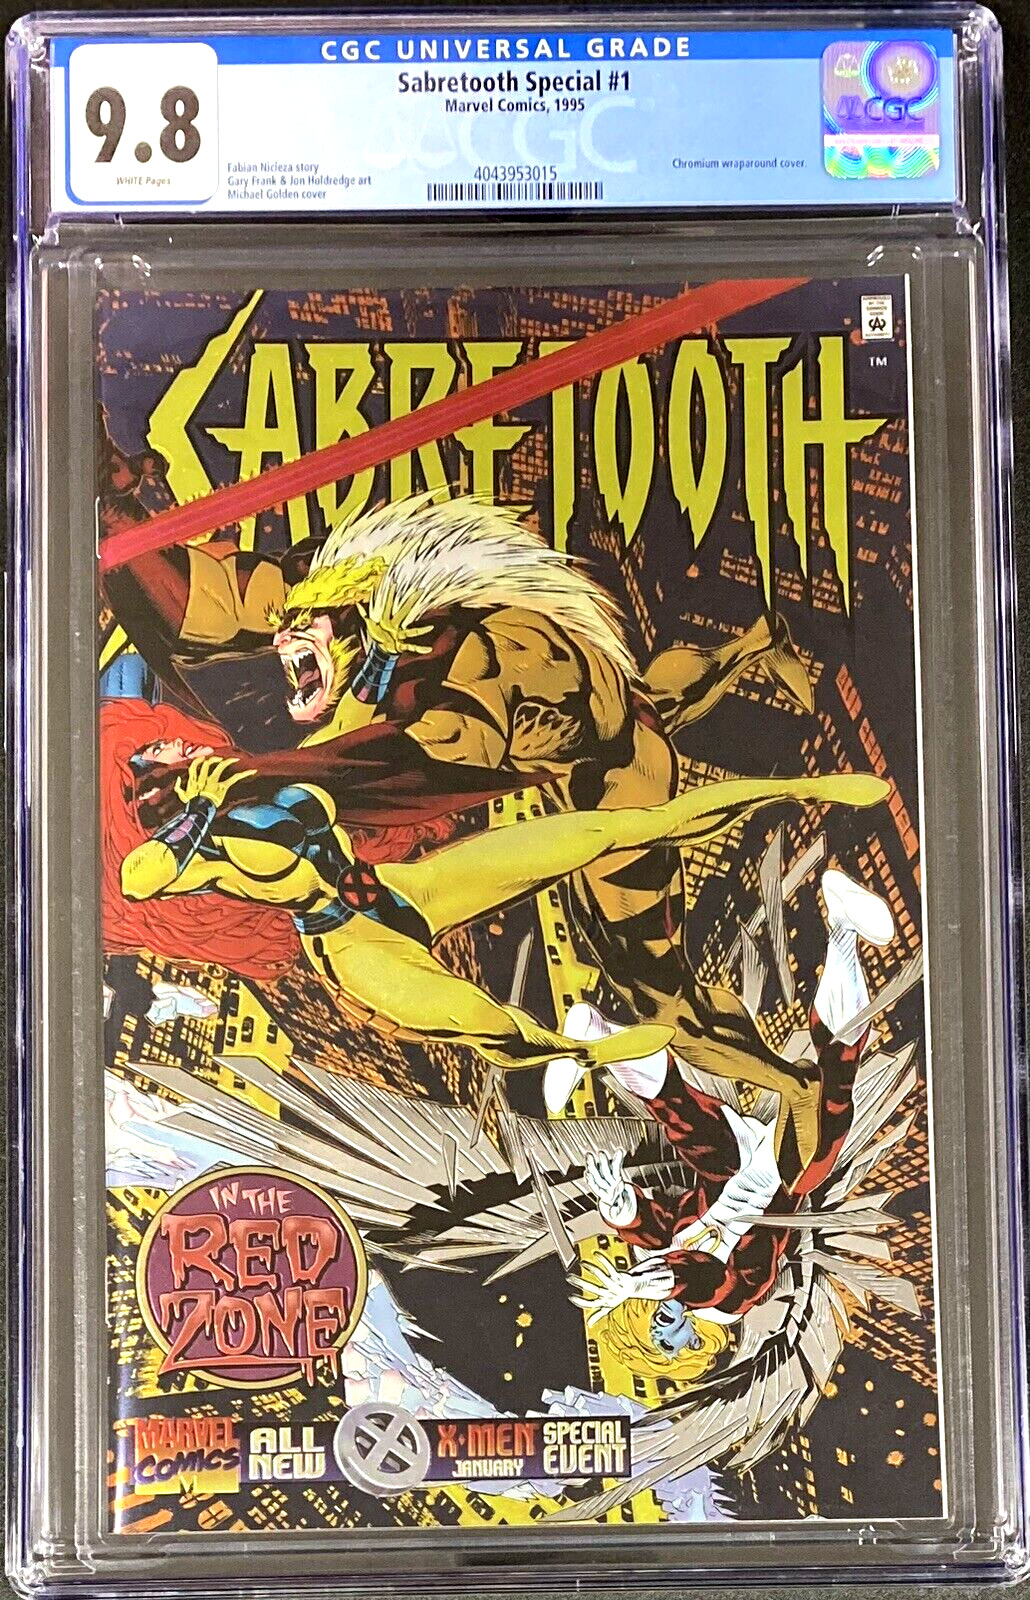 Sabretooth Special #1 1995 Chromium Wraparound Michael Golden Cover CGC 9.8 NM/M